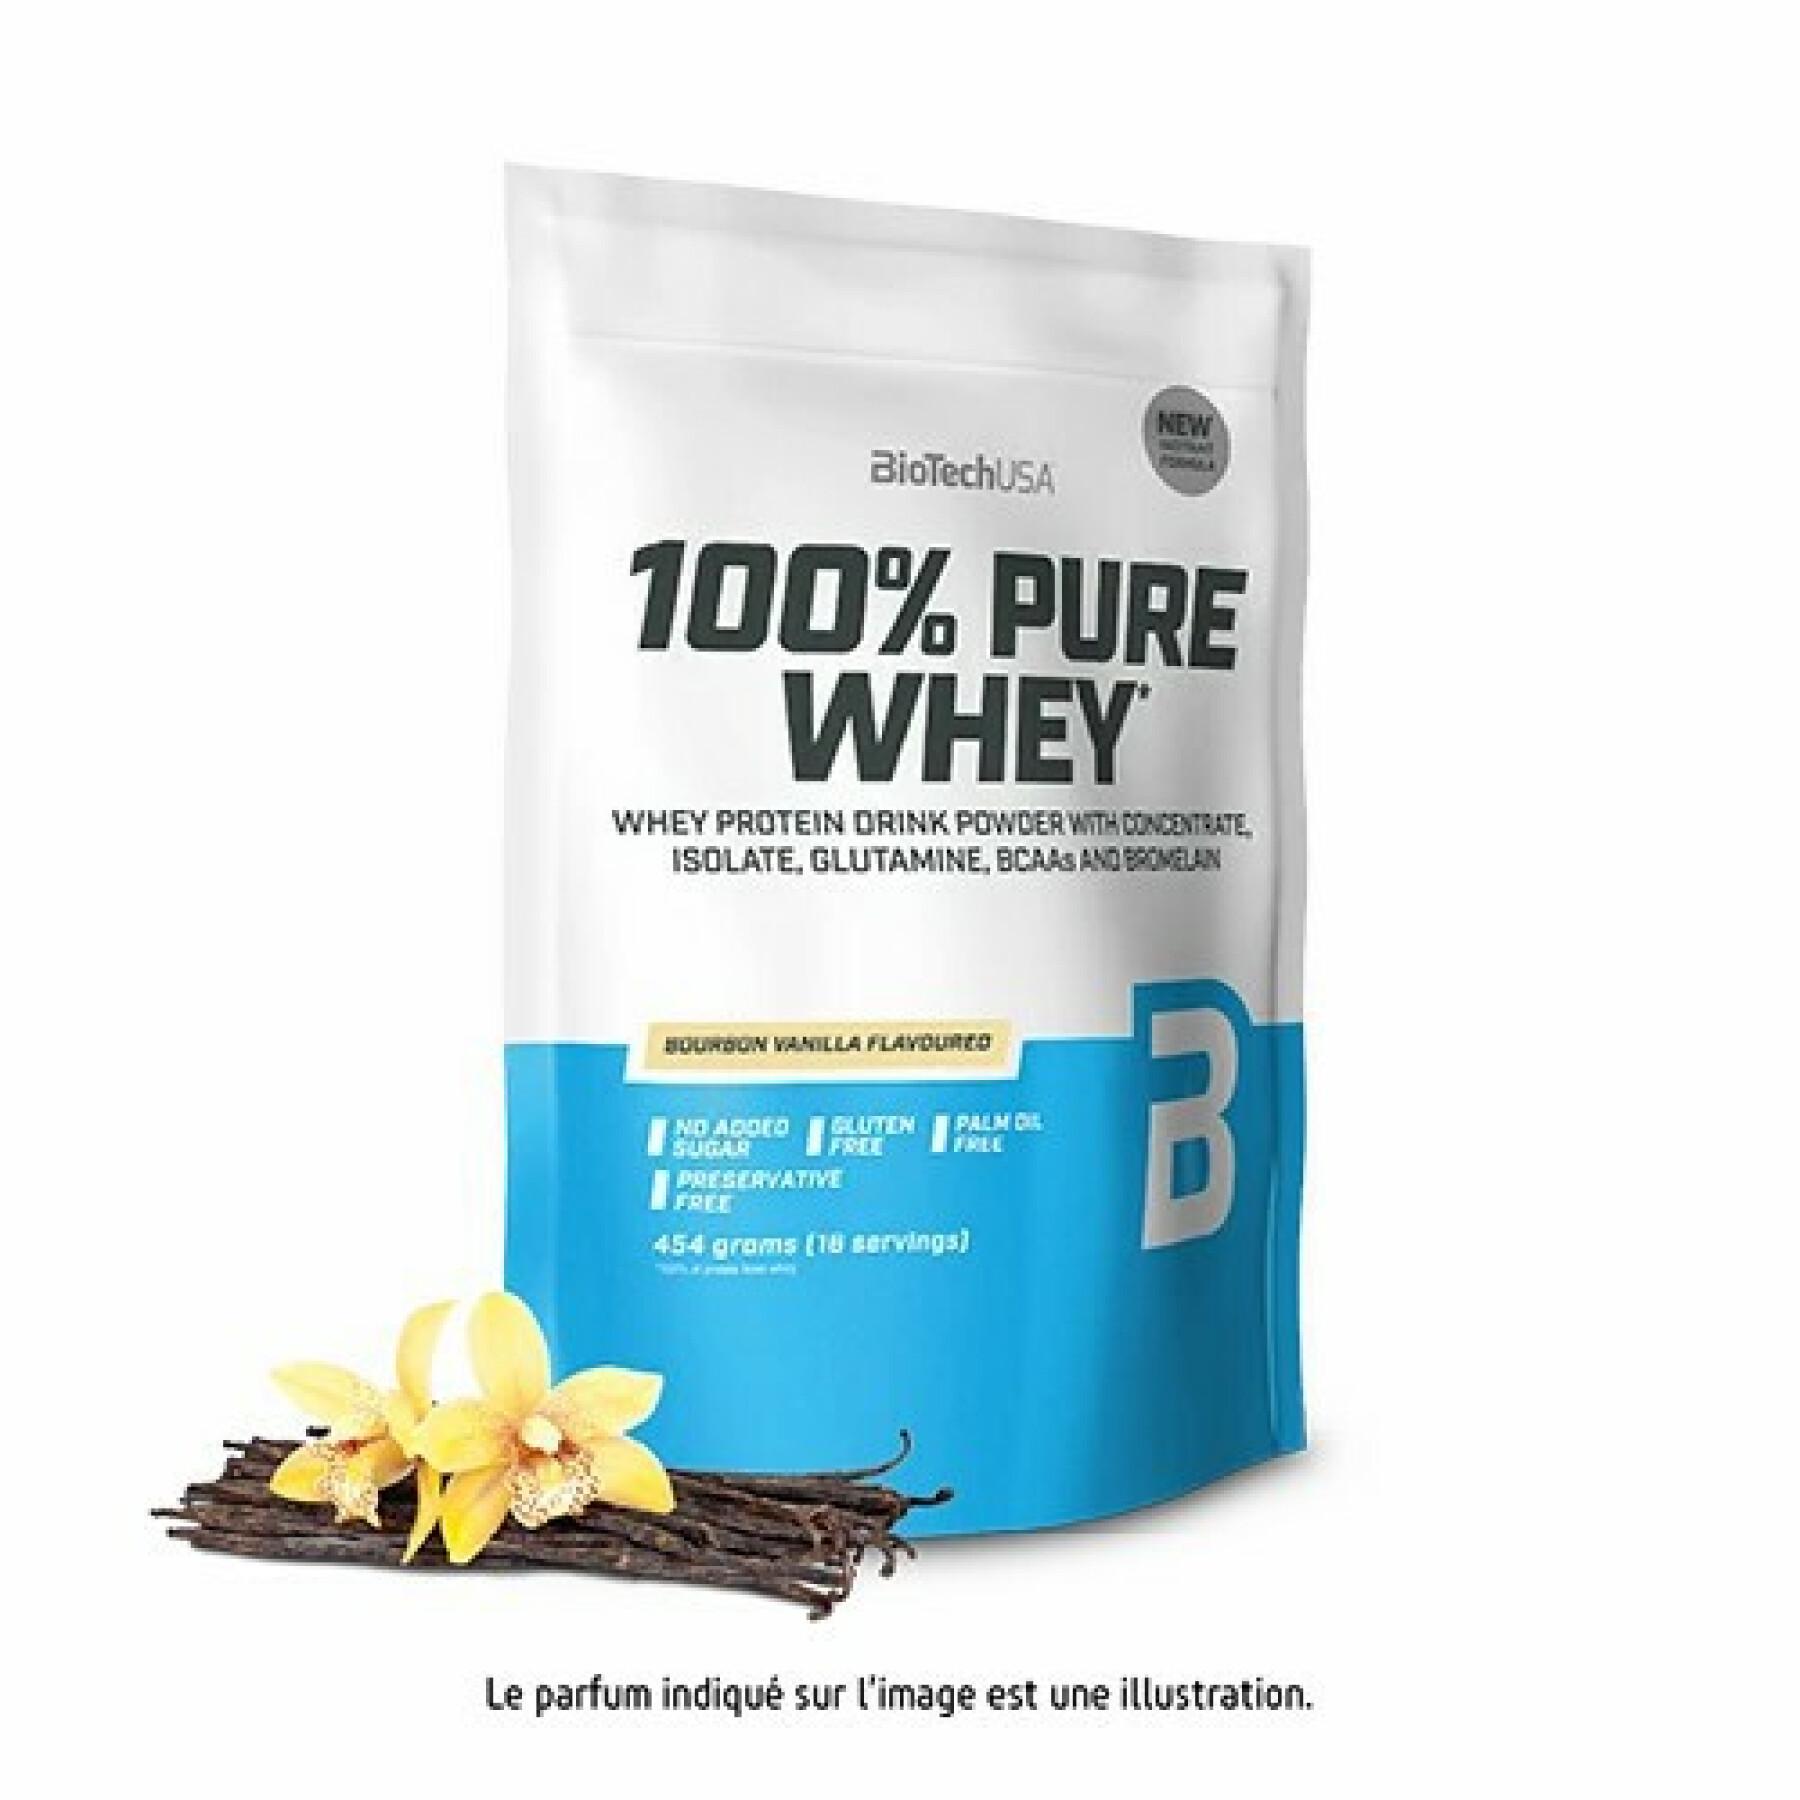 Pak van 10 zakken 100% zuivere wei-eiwitten Biotech USA - Vanille bourbon - 454g